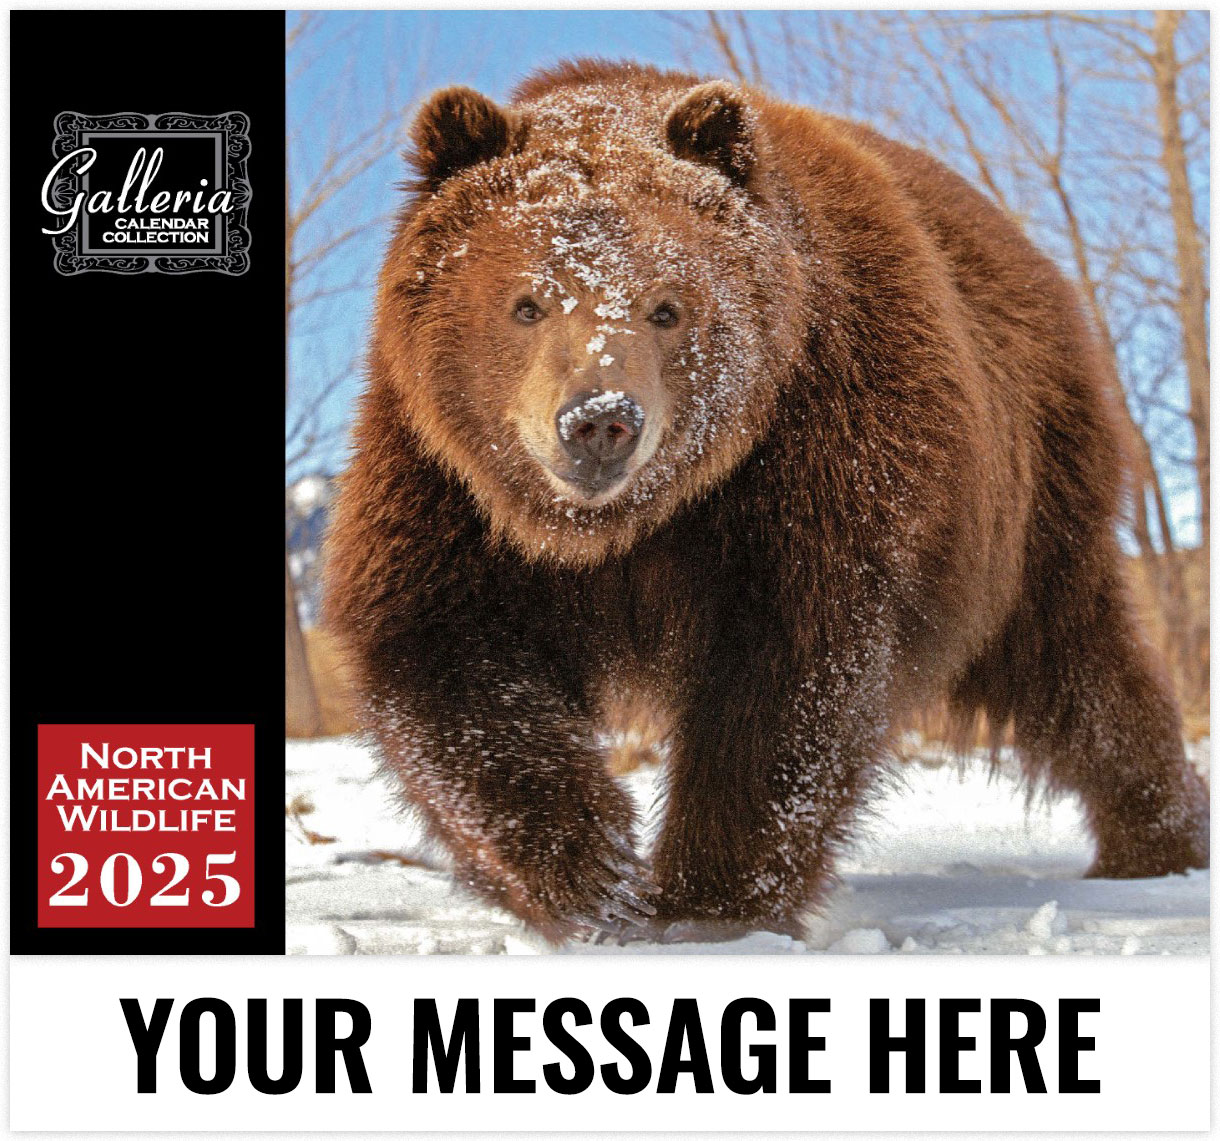 Galleria North American Wildlife - 2025